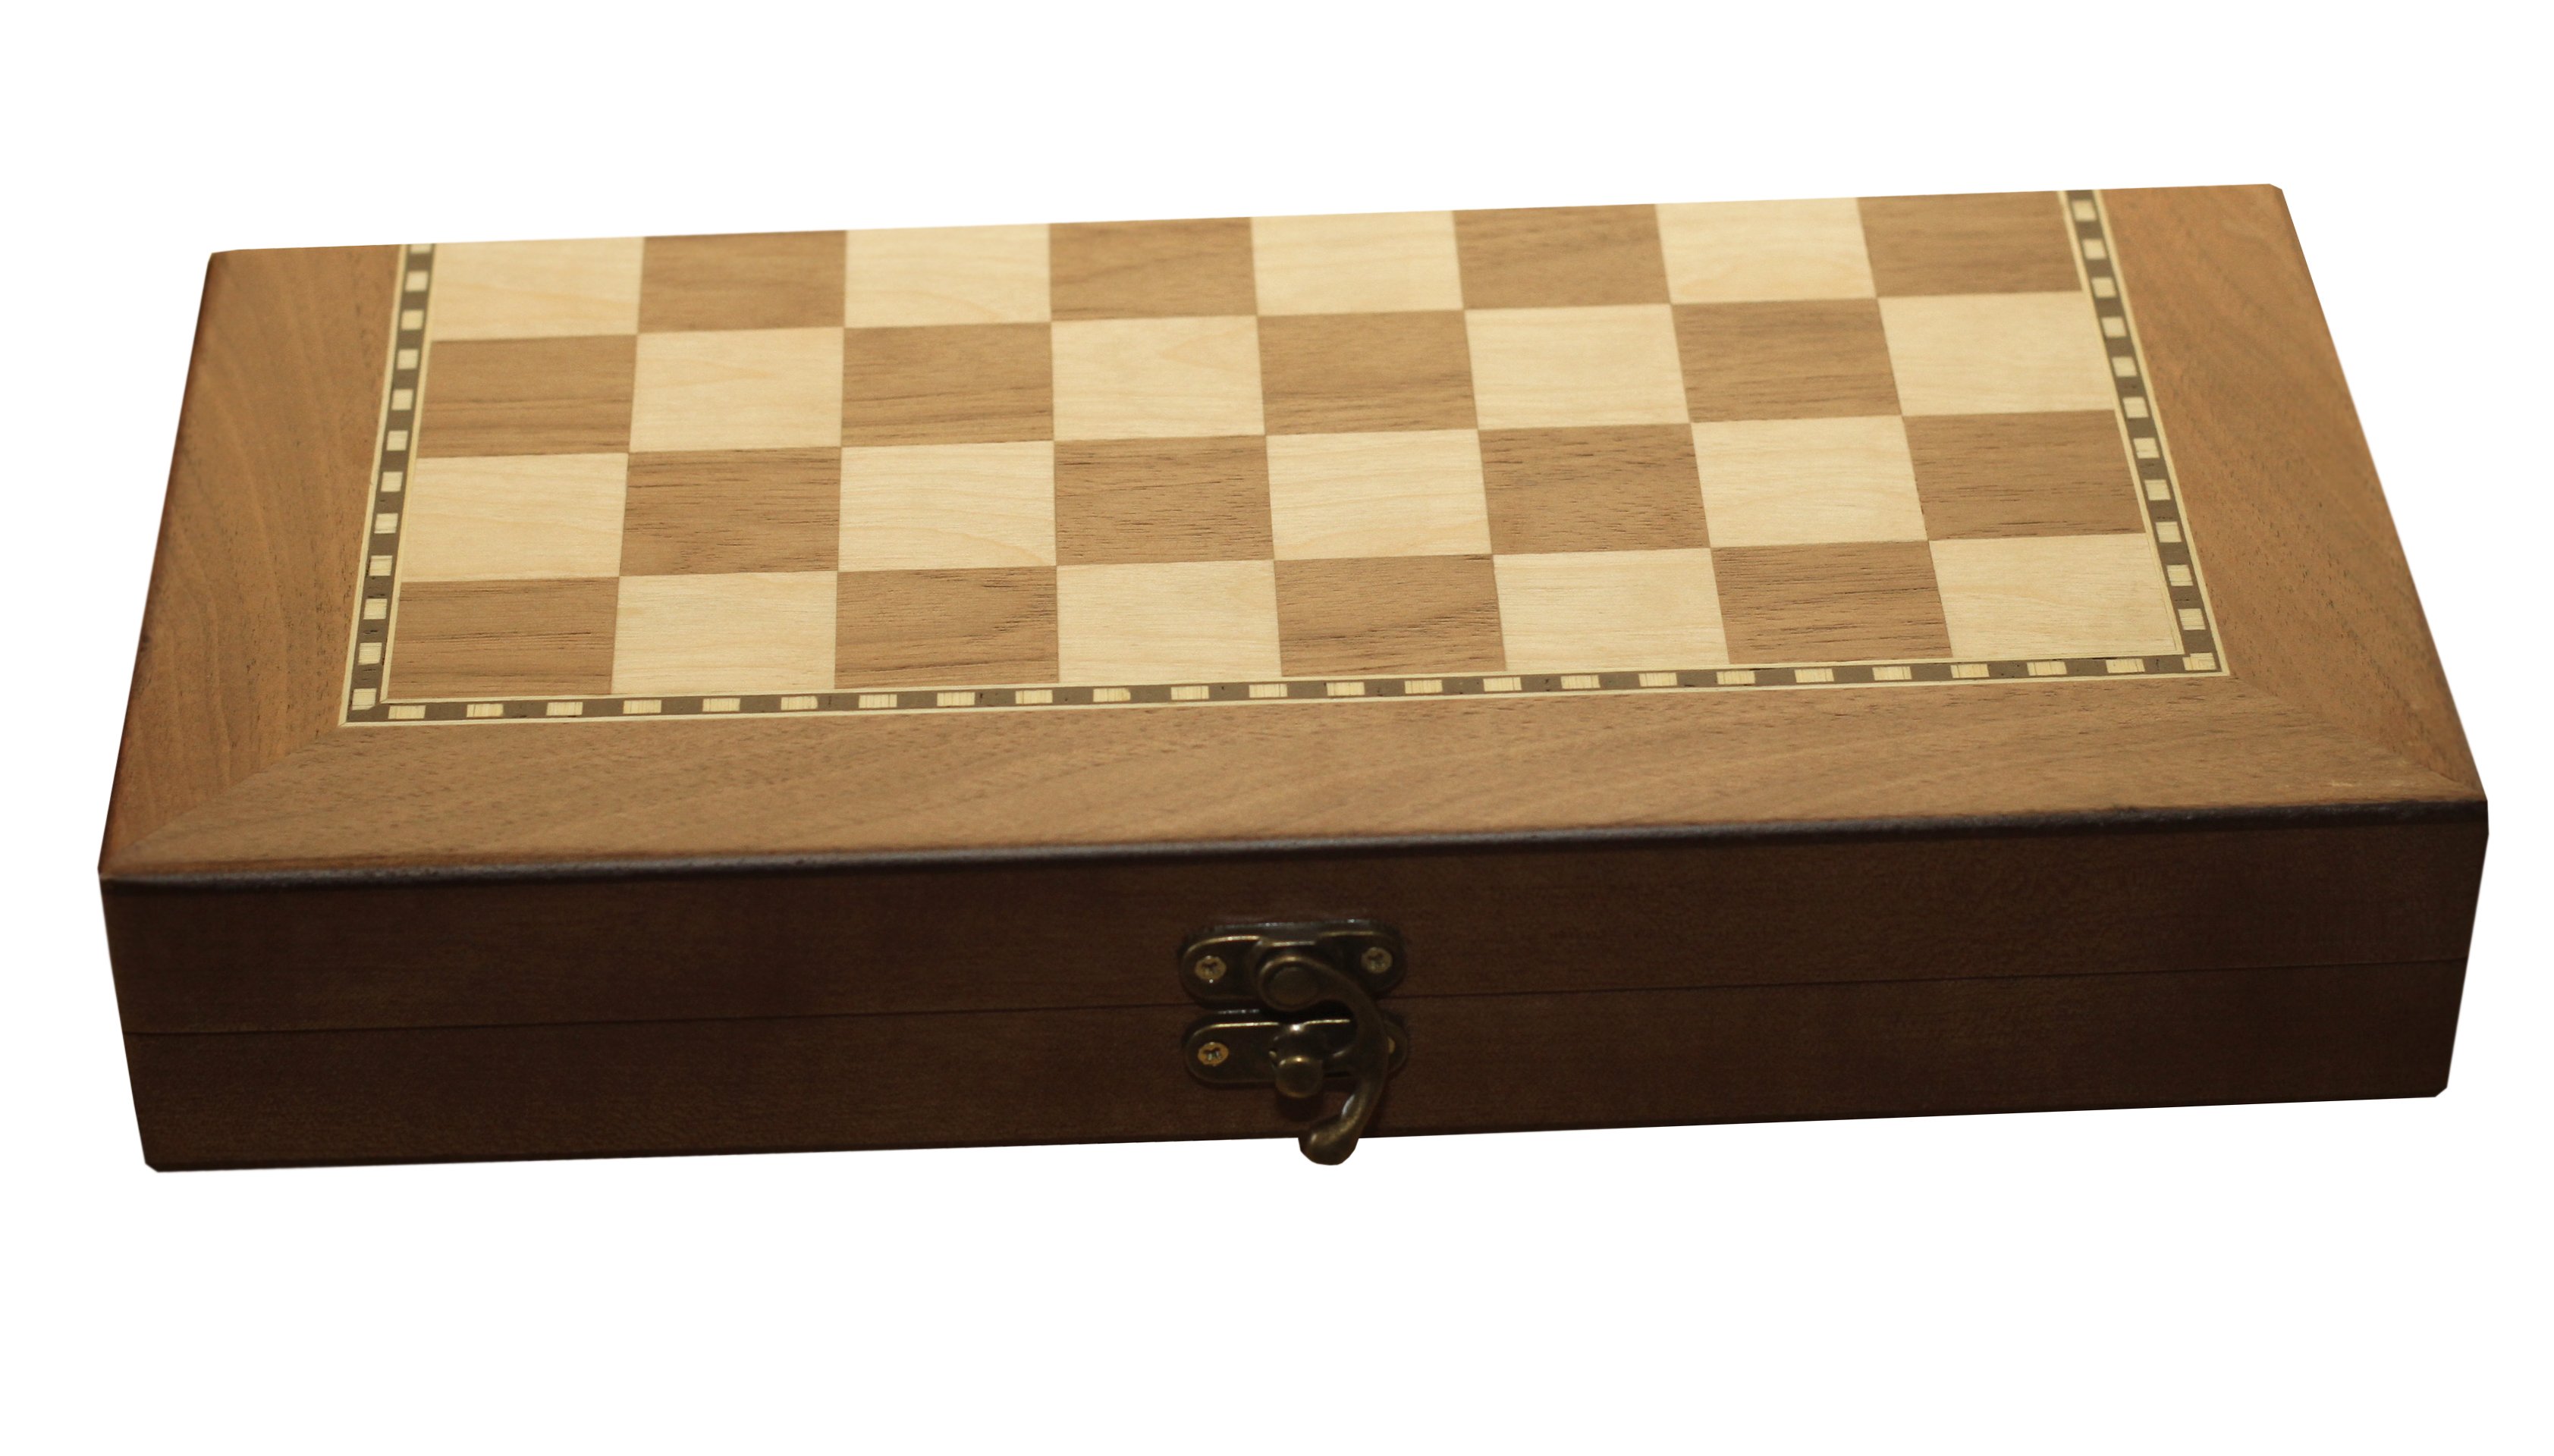 Jogo xadrez tabuleiro tabuleiro de xadrez marchetaria jogos - mbathome